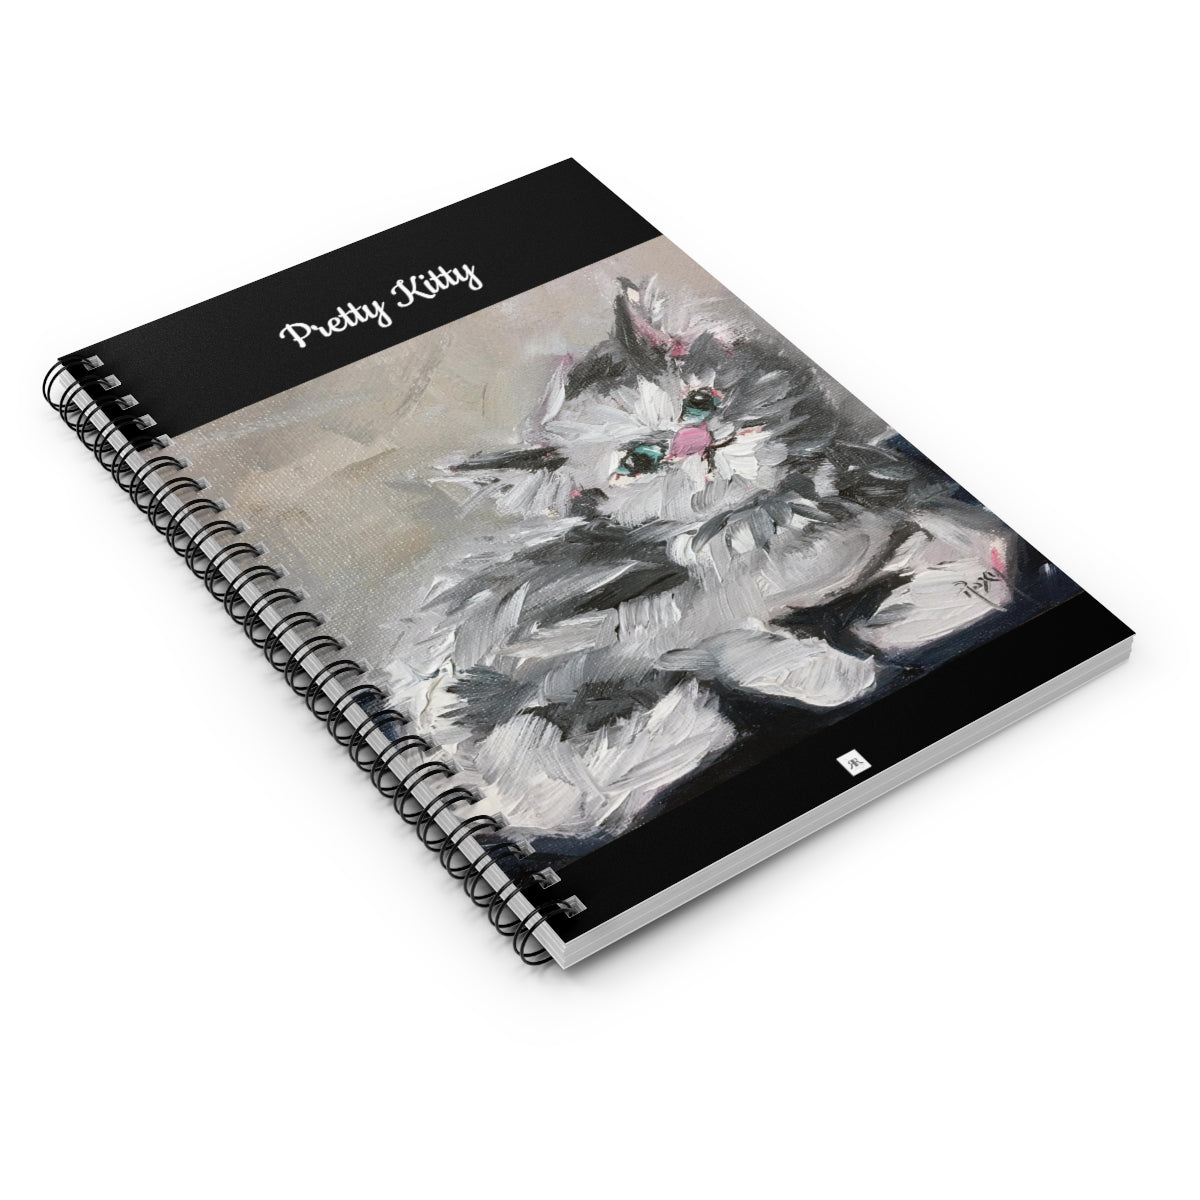 Gato persa Pretty Kitty Cuaderno de espiral